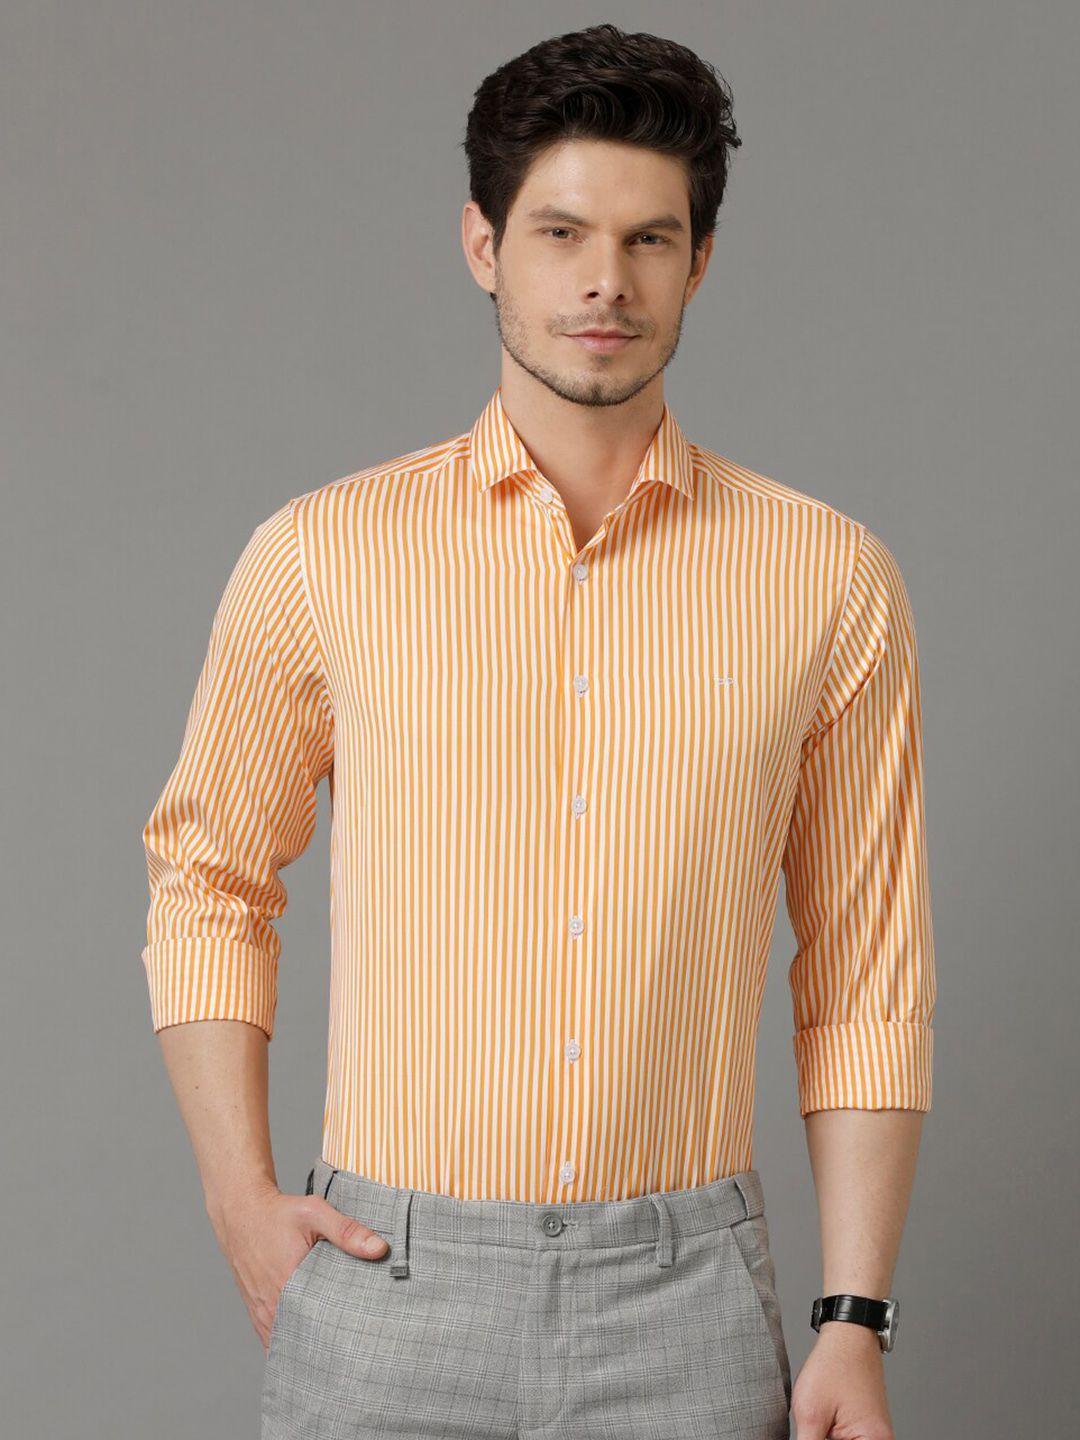 aldeno comfort vertical striped spread collar pure cotton casual shirt